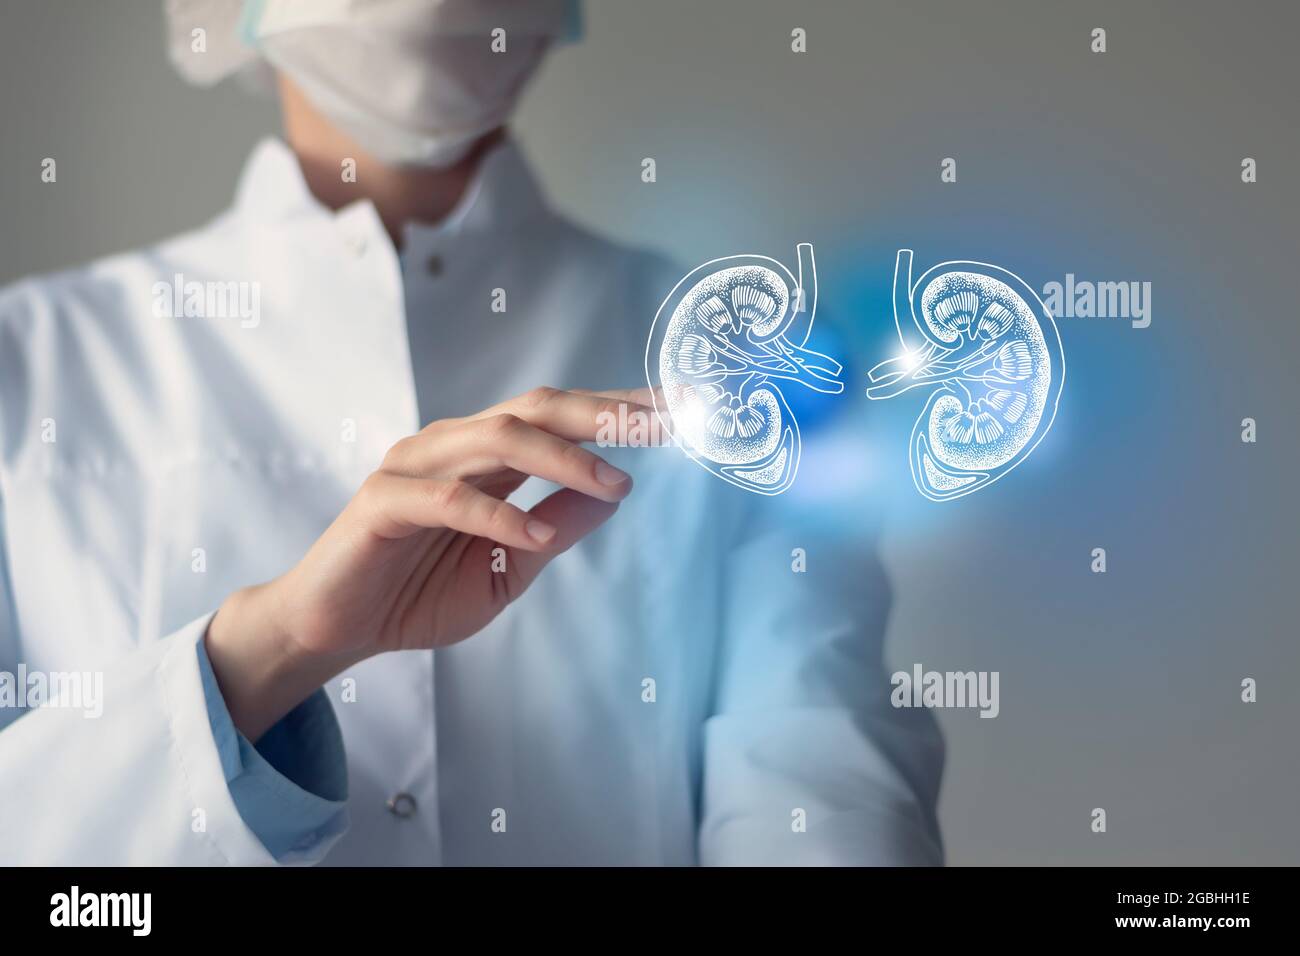 Il medico femminile tocca i reni virtuali in mano. Foto sfocata, organo umano lavorato a mano, evidenziato in blu come simbolo di guarigione. Assistenza sanitaria ospedaliera Foto Stock